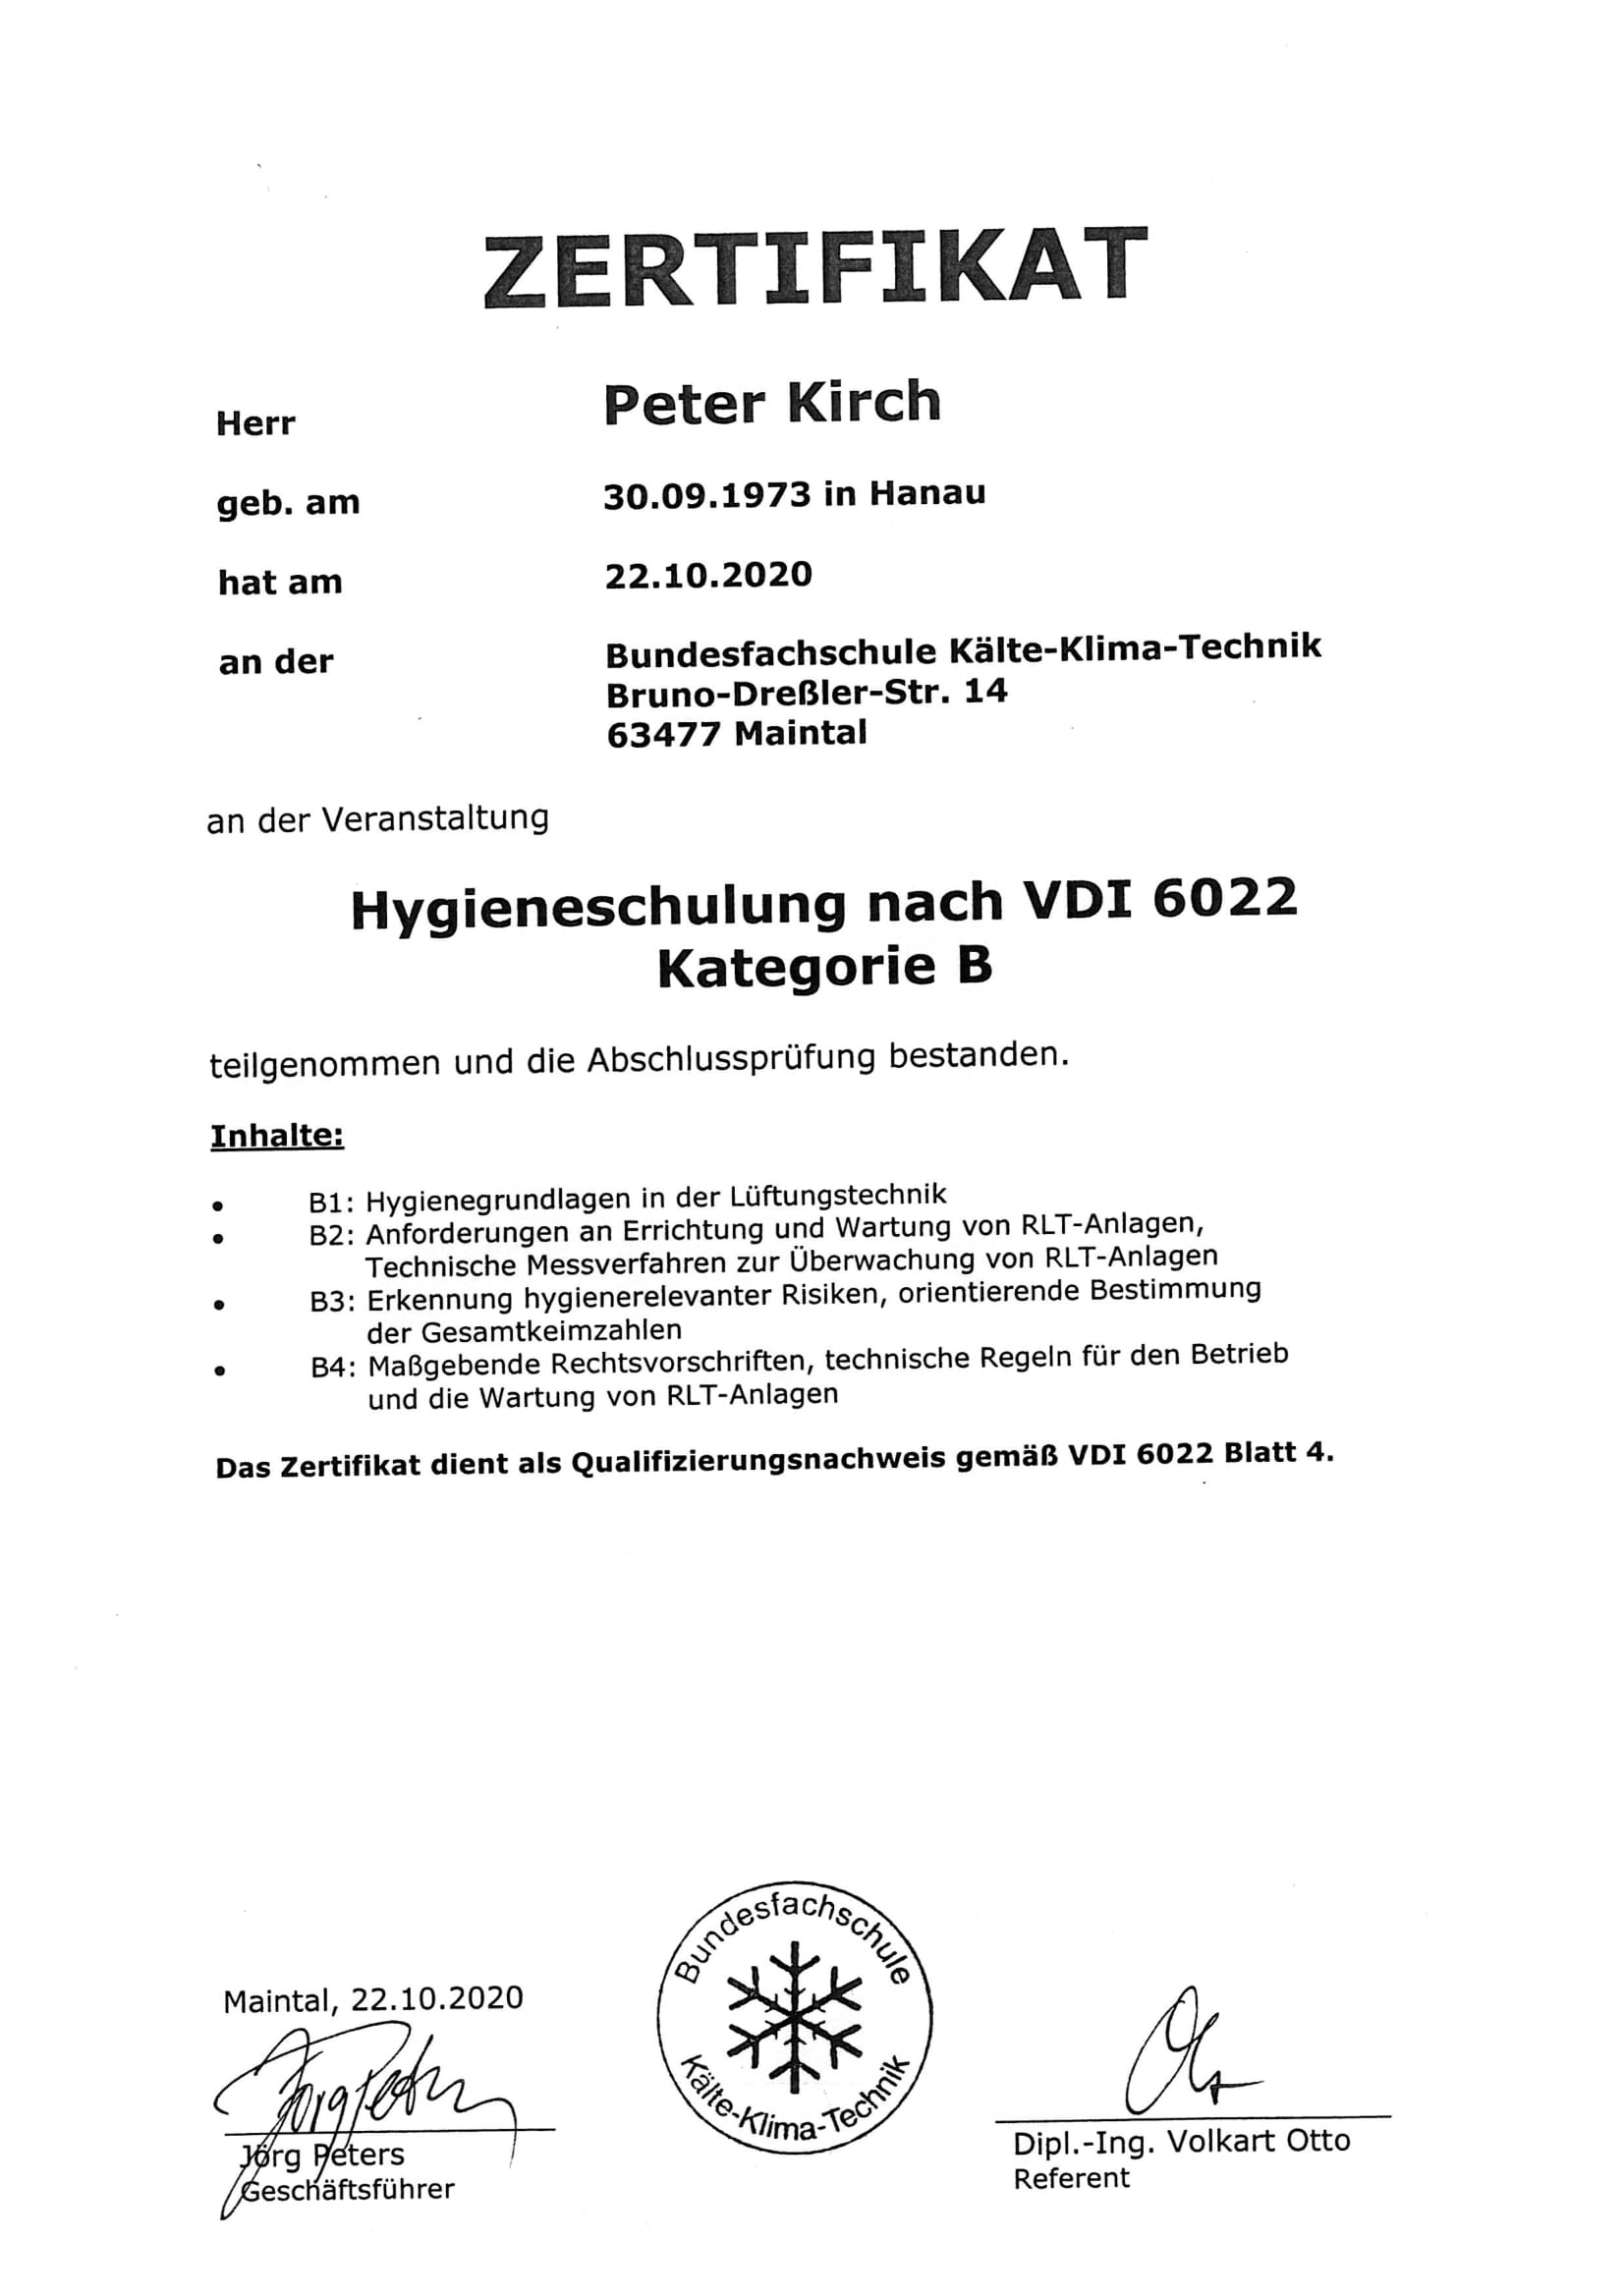 Zertifikate Peter Kirch und Andreas Vogt vom 22.10.2020 1